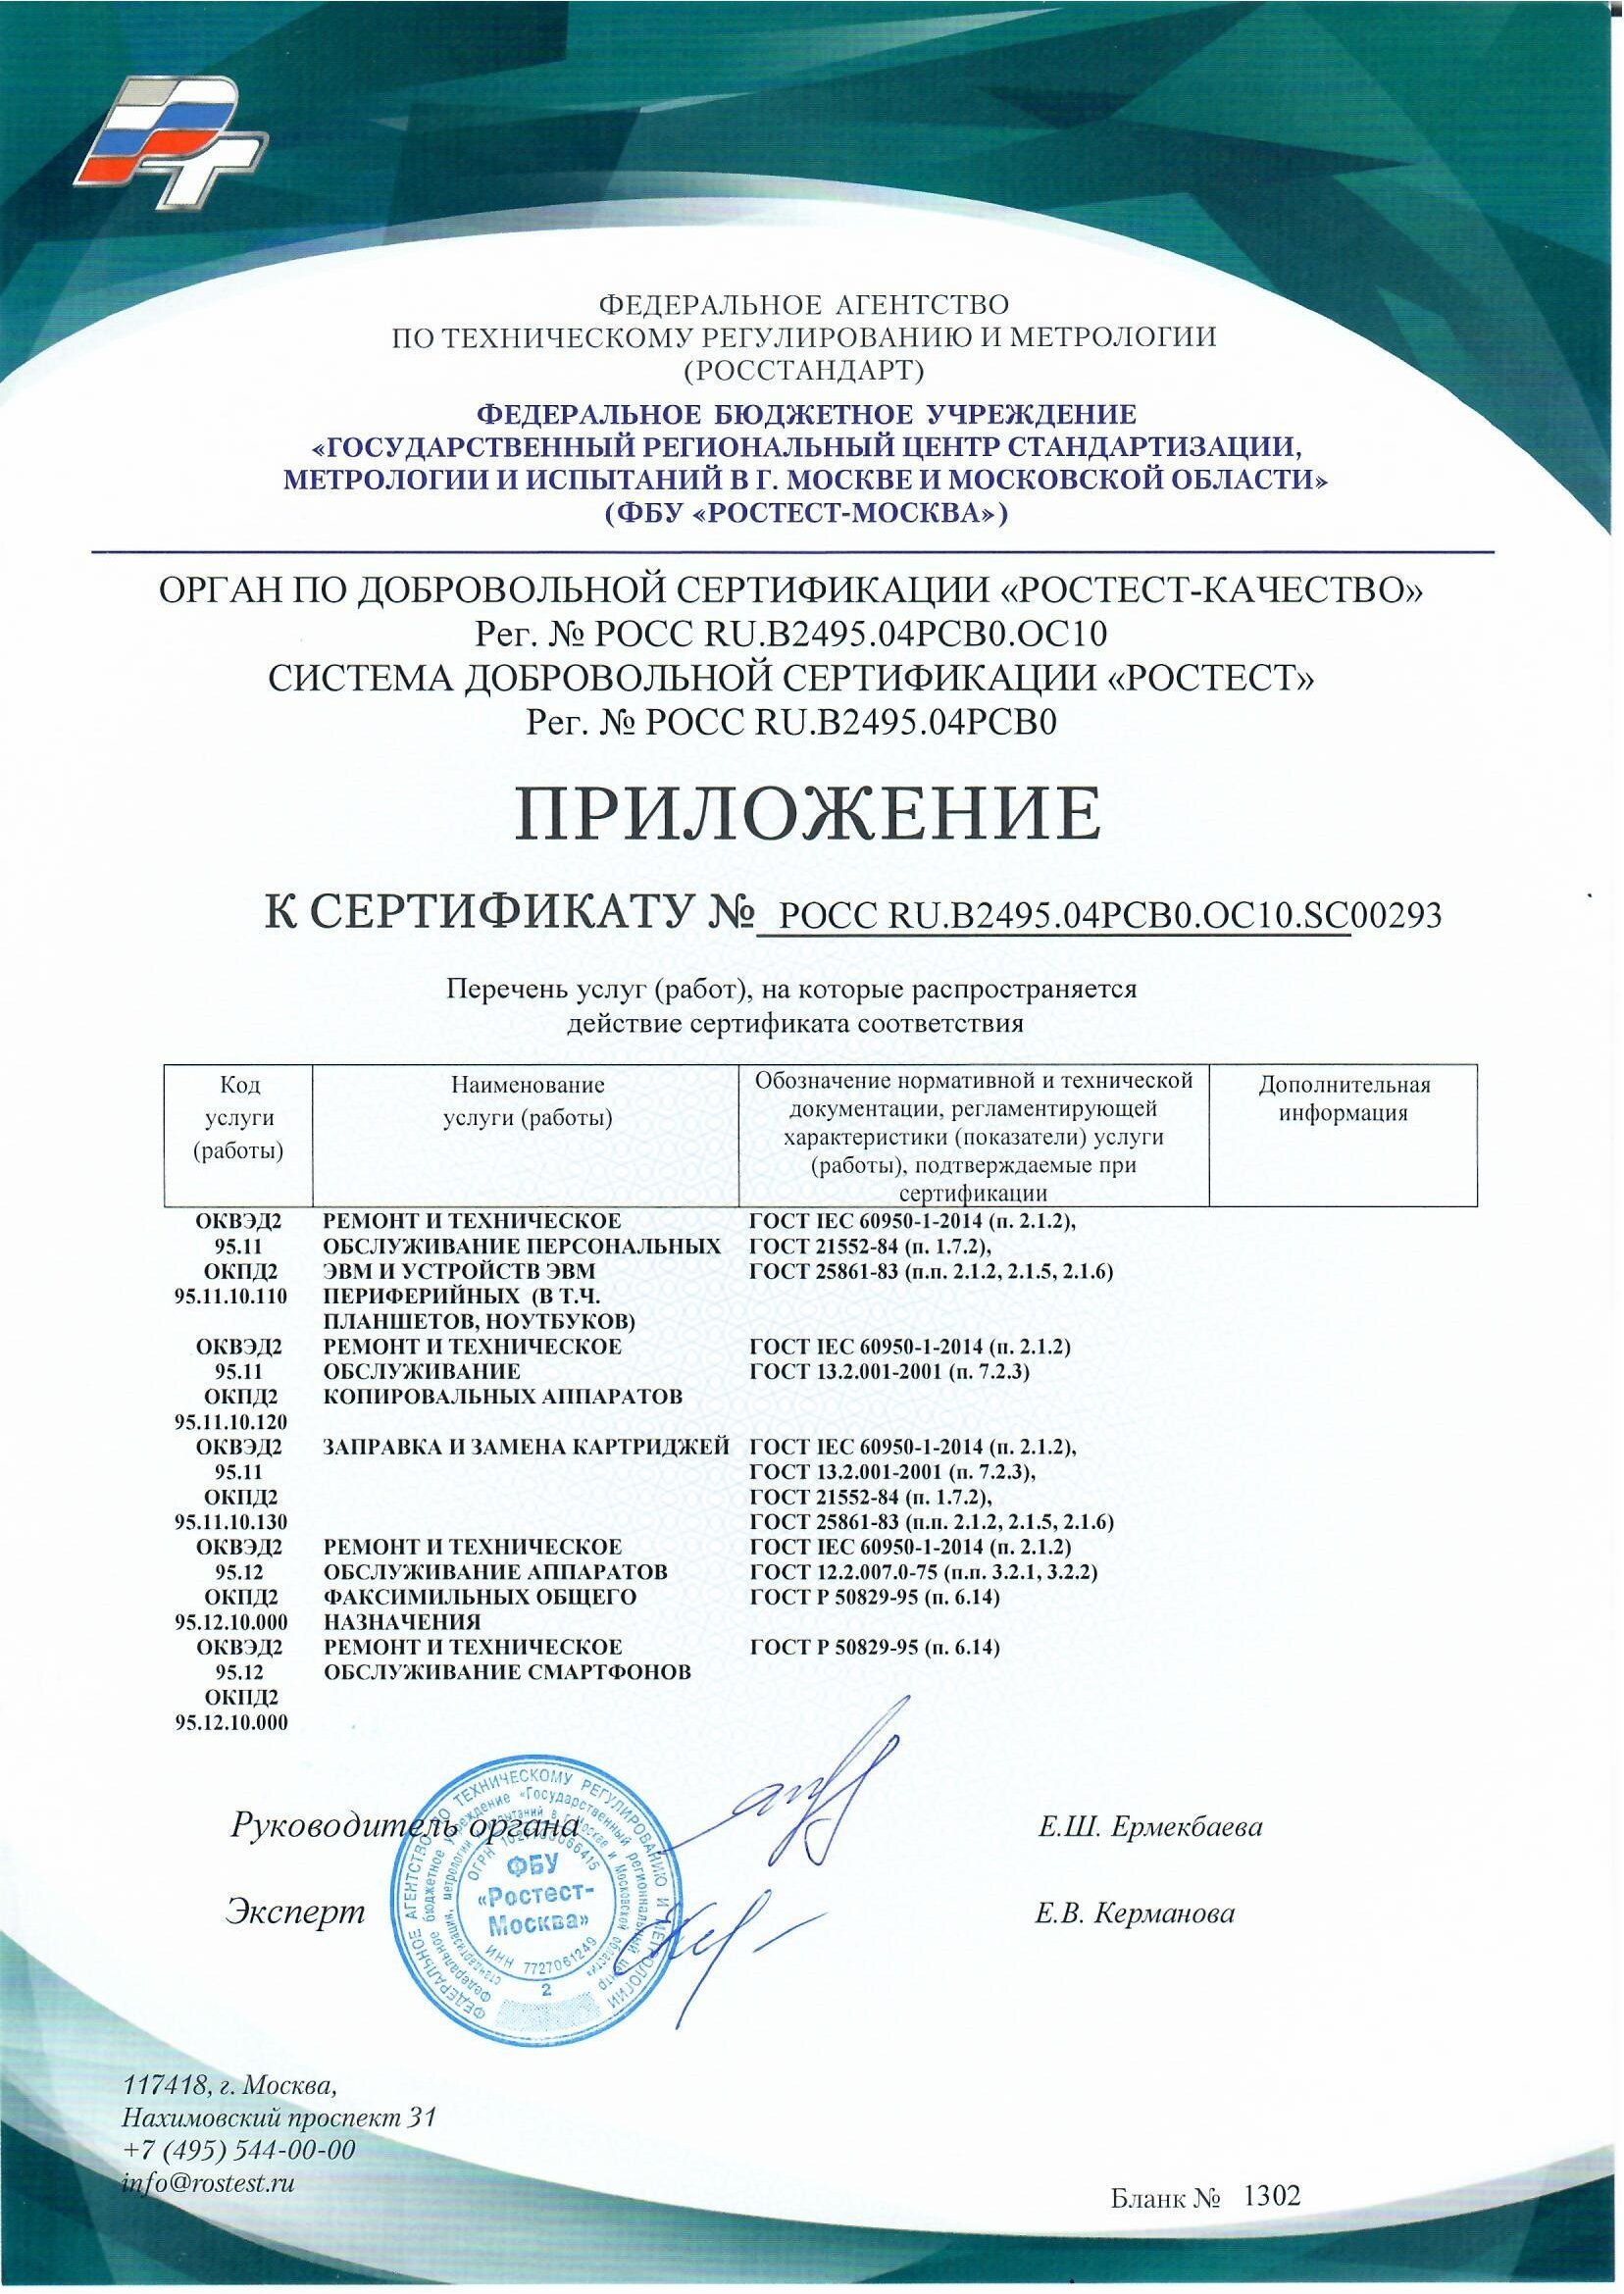 сертификаты дельта копирс (4)